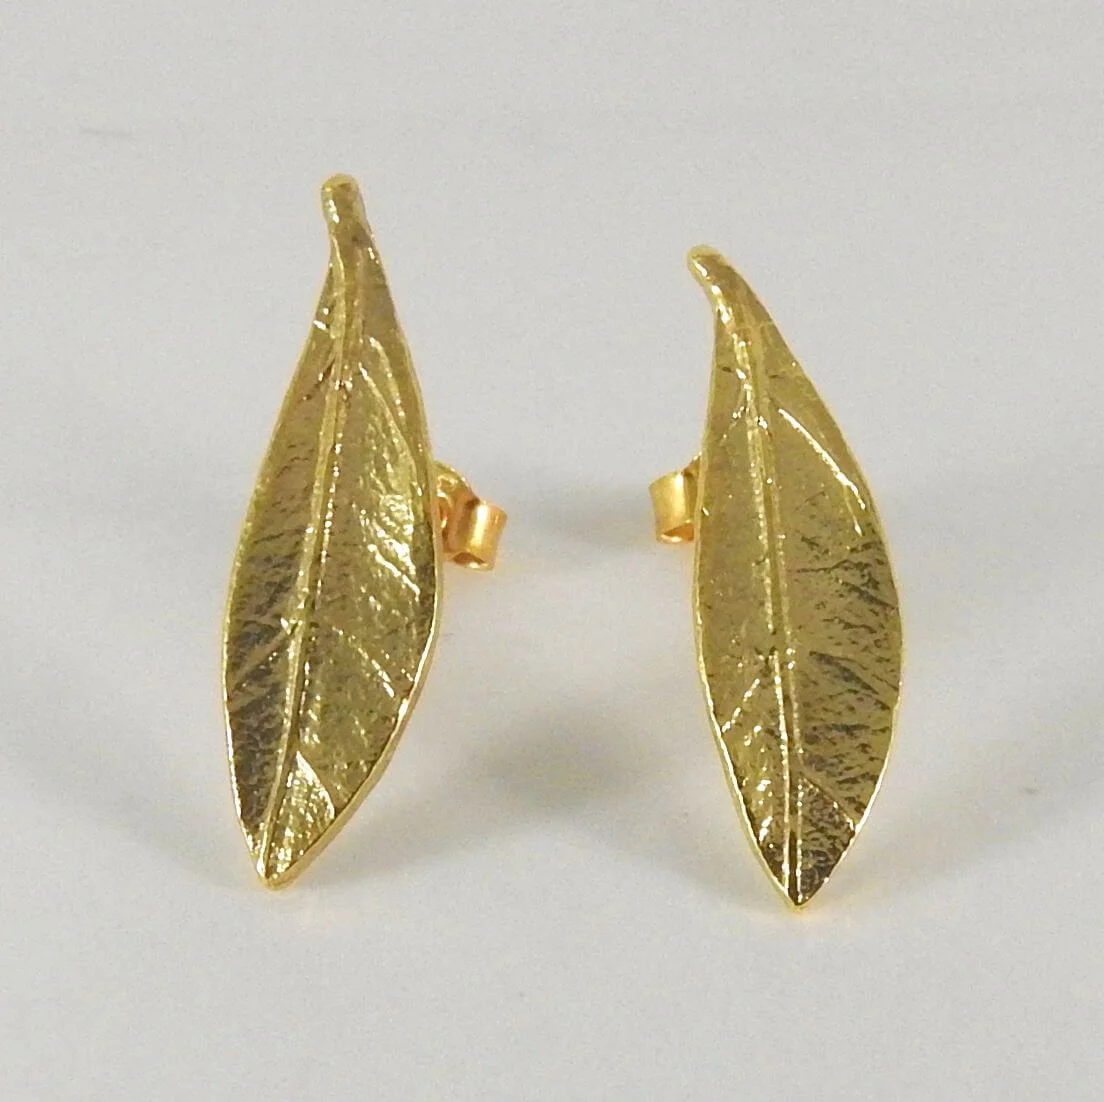 Olive Leaf Stud Earrings